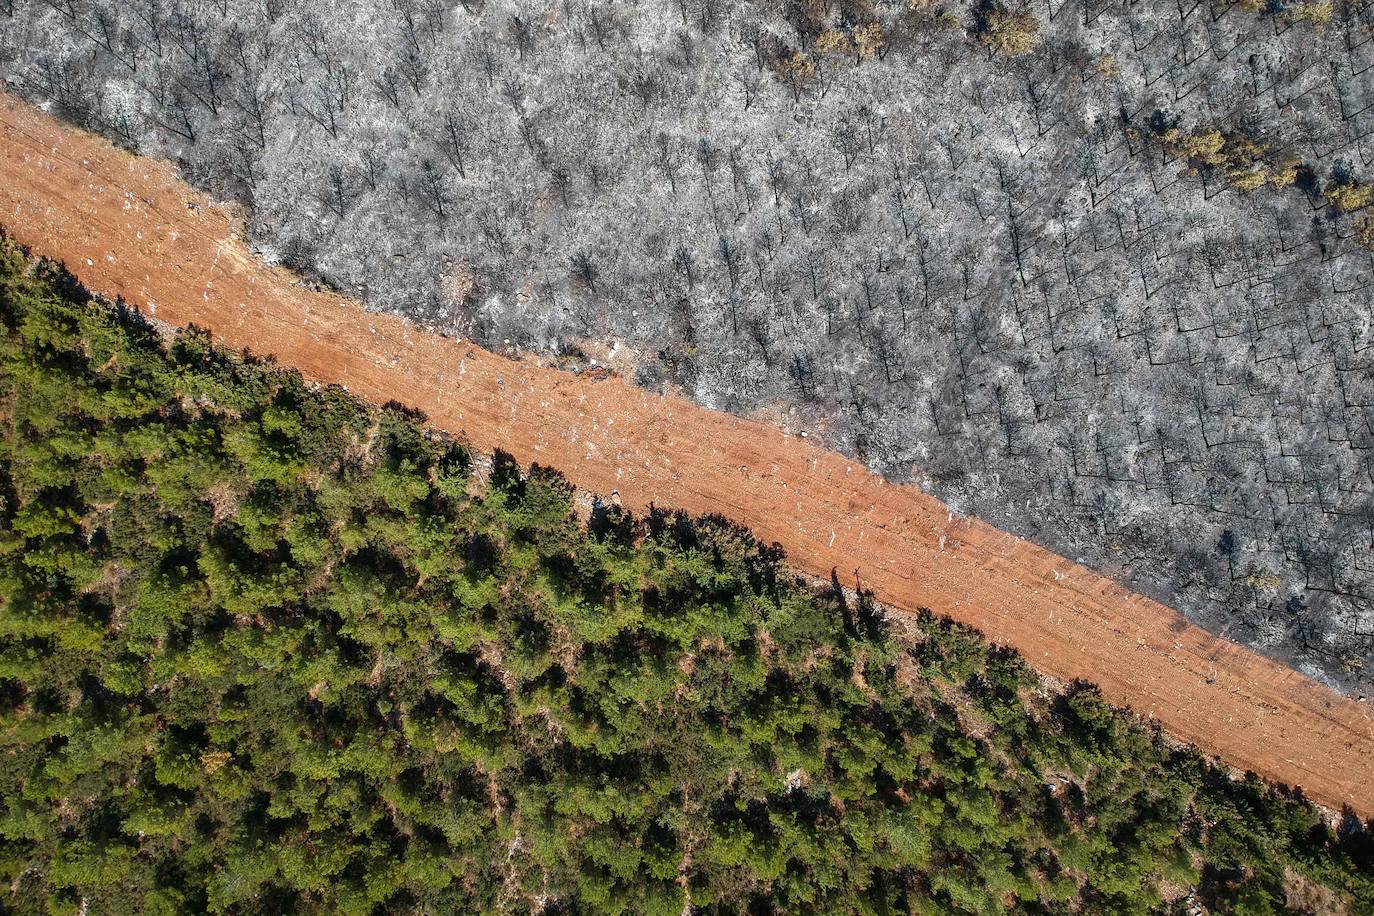 Esta fotografía aérea tomada el 7 de agosto de 2021 muestra una pista delimitada por árboles quemados en un bosque en el distrito de Mugla. Grecia y Turquía han estado combatiendo incendios devastadores este verano mientras la región sufría su peor ola de calor en décadas. Funcionarios y expertos han relacionado eventos climáticos tan intensos con el cambio climático